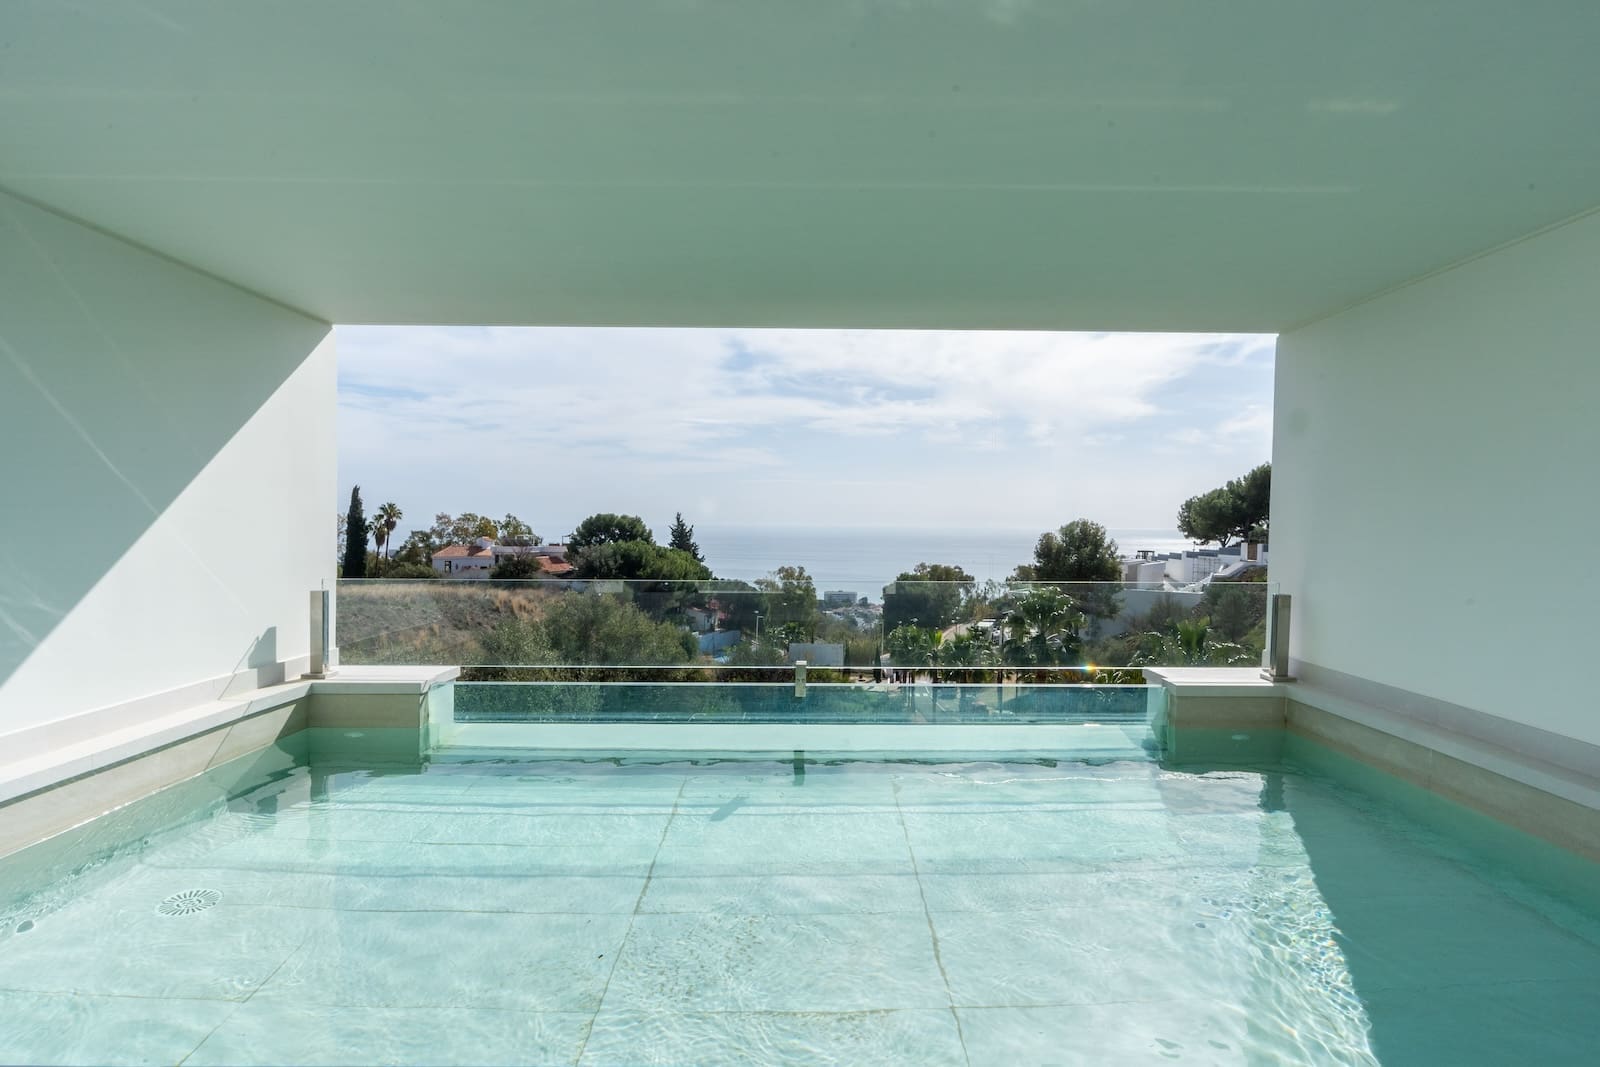 Villa Santa Monica Luxe Nieuwbouwvilla in Benalmádena te Koop - MDR Luxury Homes